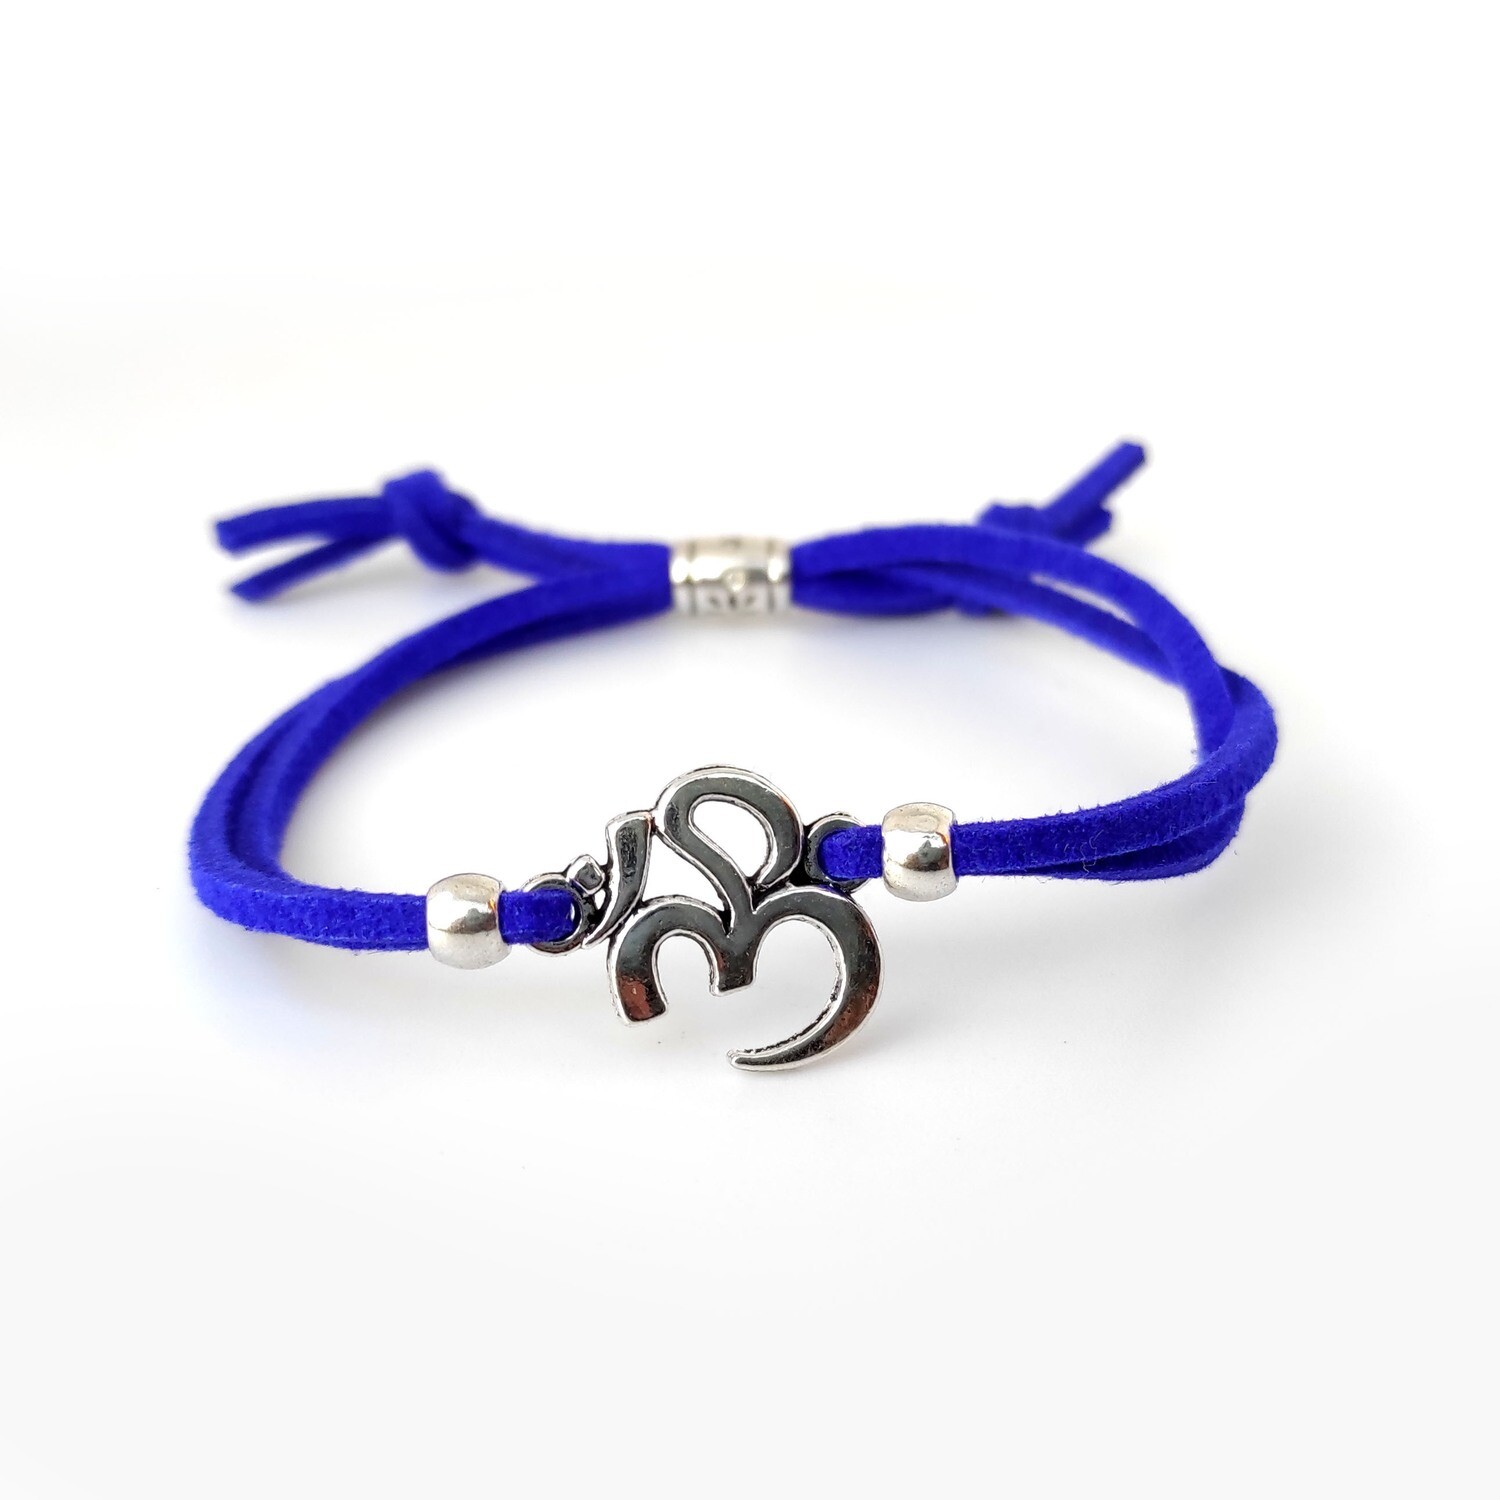 Aum blue cord bracelet